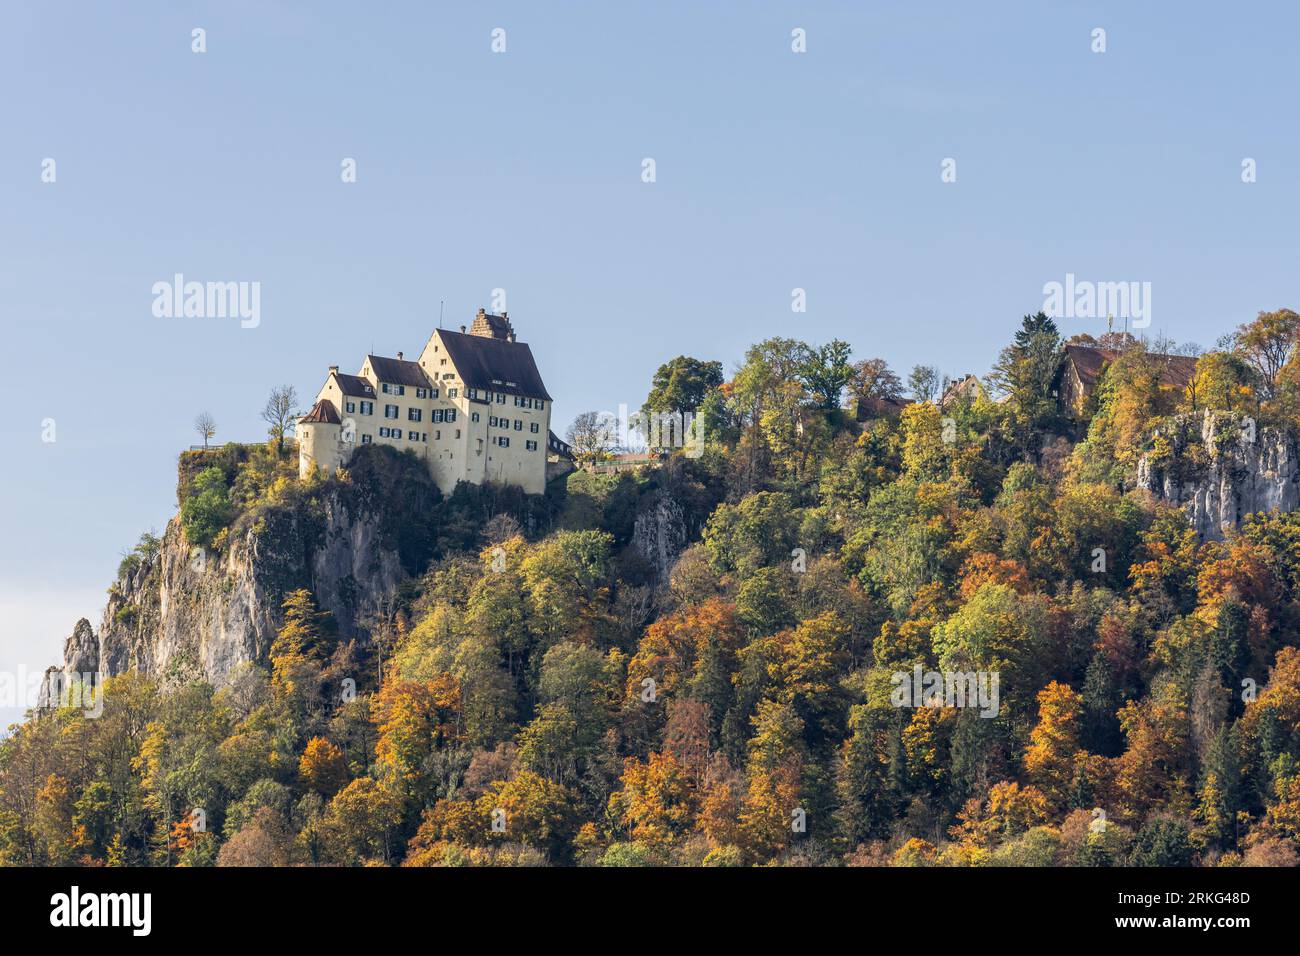 Castello di Werenwag nella valle autunnale dell'alto Danubio, Beuron, Parco naturale dell'alto Danubio, distretto di Sigmaringen, Alb Svevo, Baden-Wuerttemberg, Germania Foto Stock